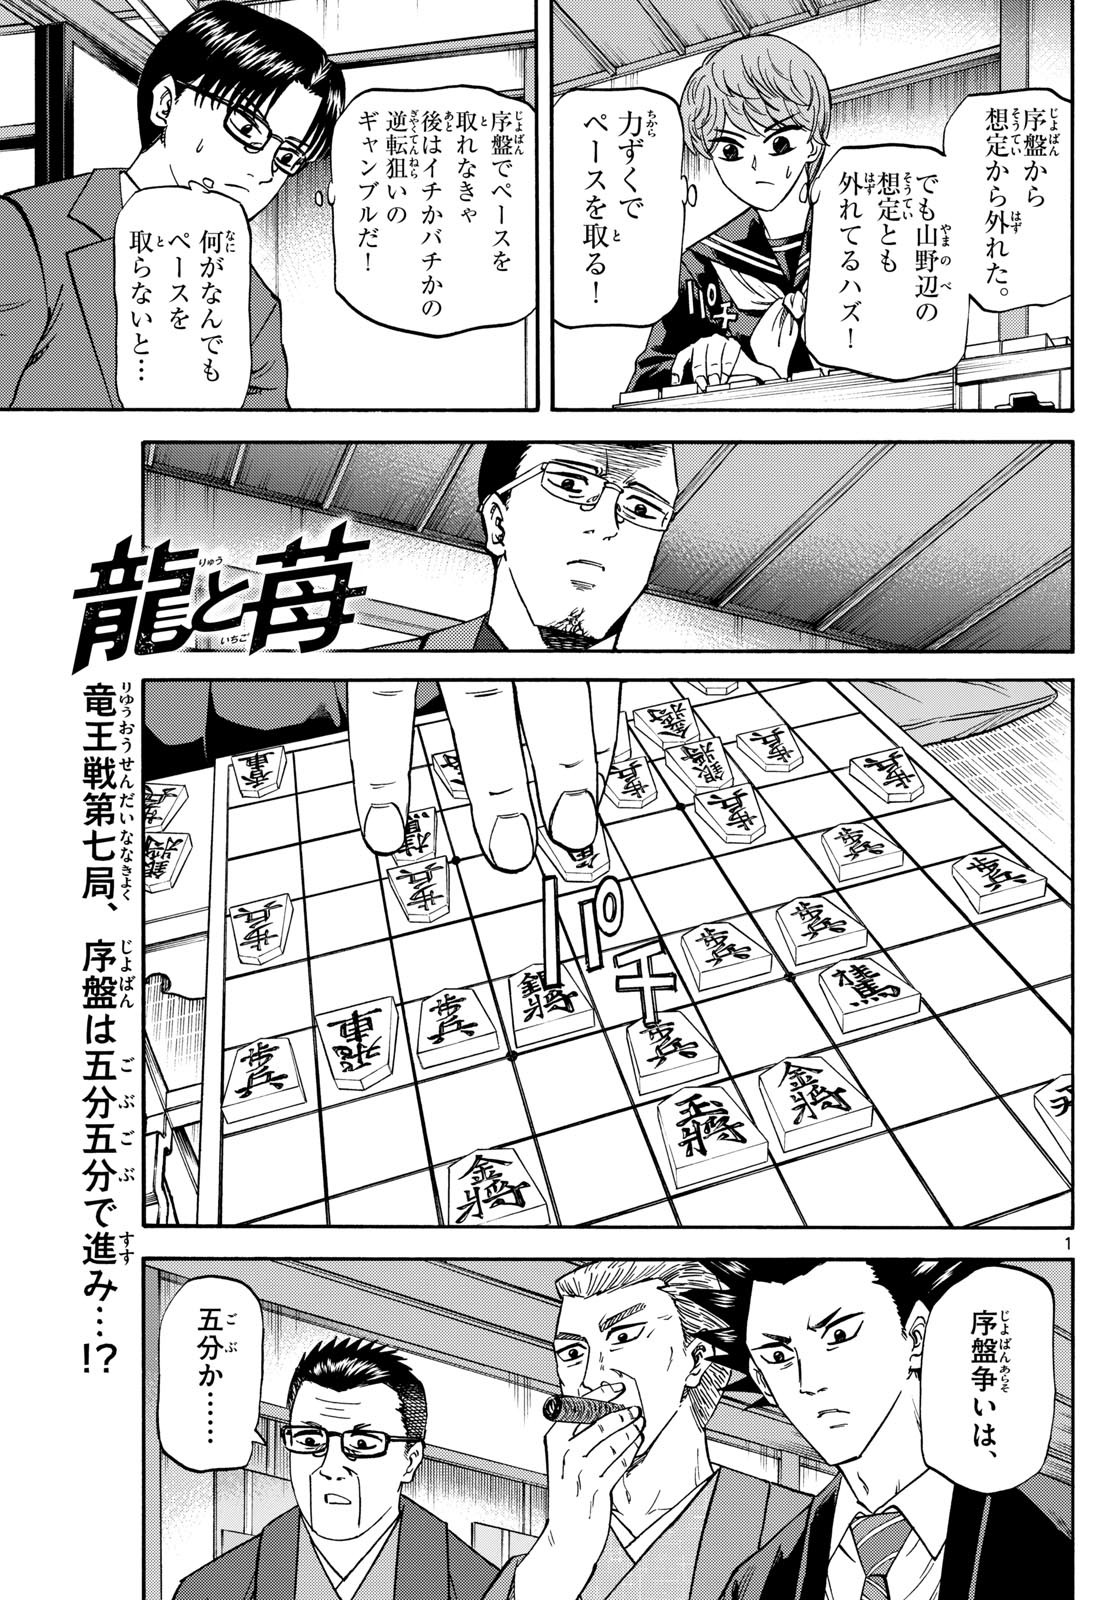 Ryu-to-Ichigo - Chapter 176 - Page 1